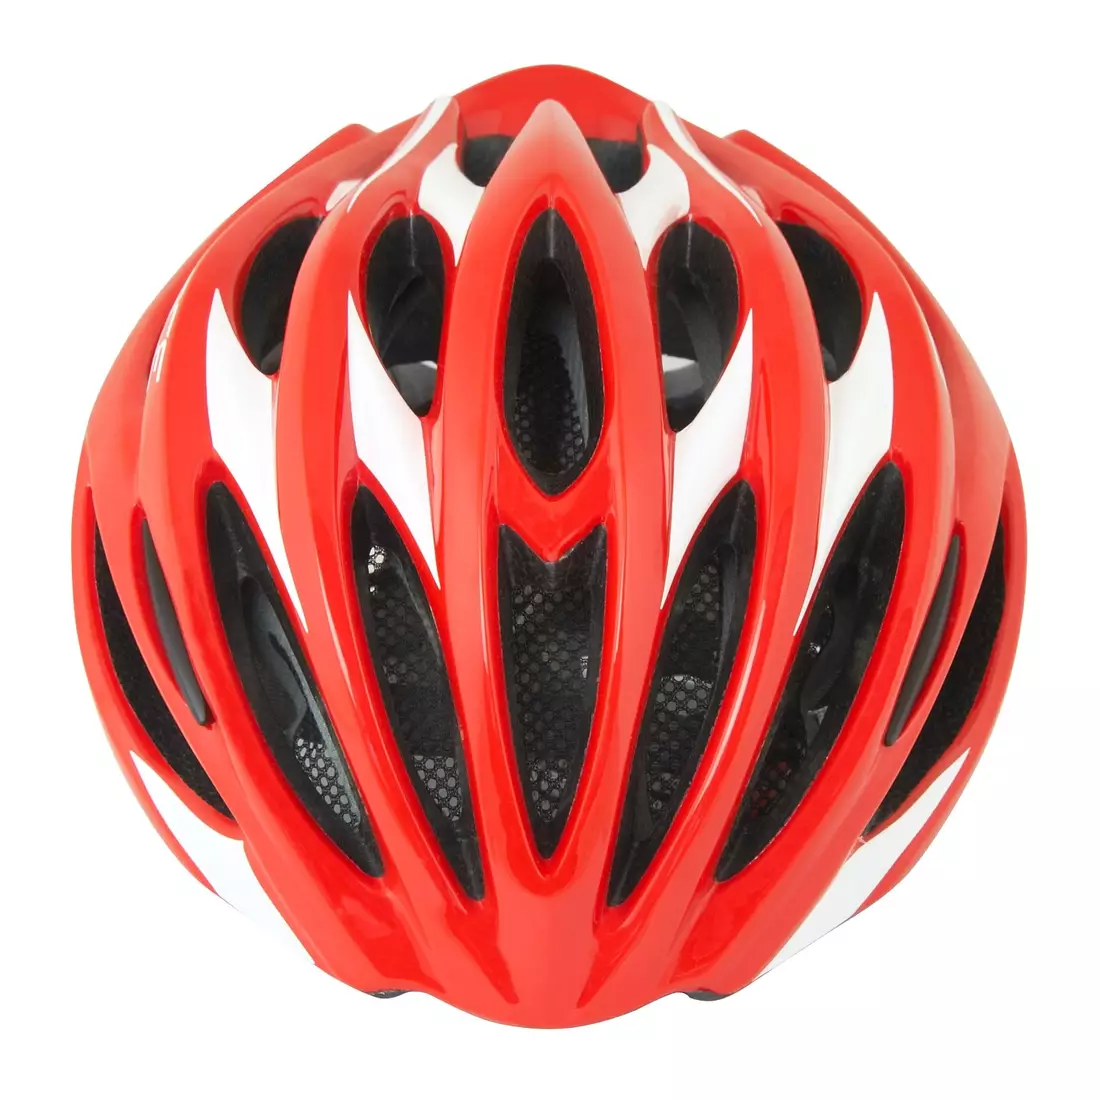 FORCE cyklistická helma BAT red